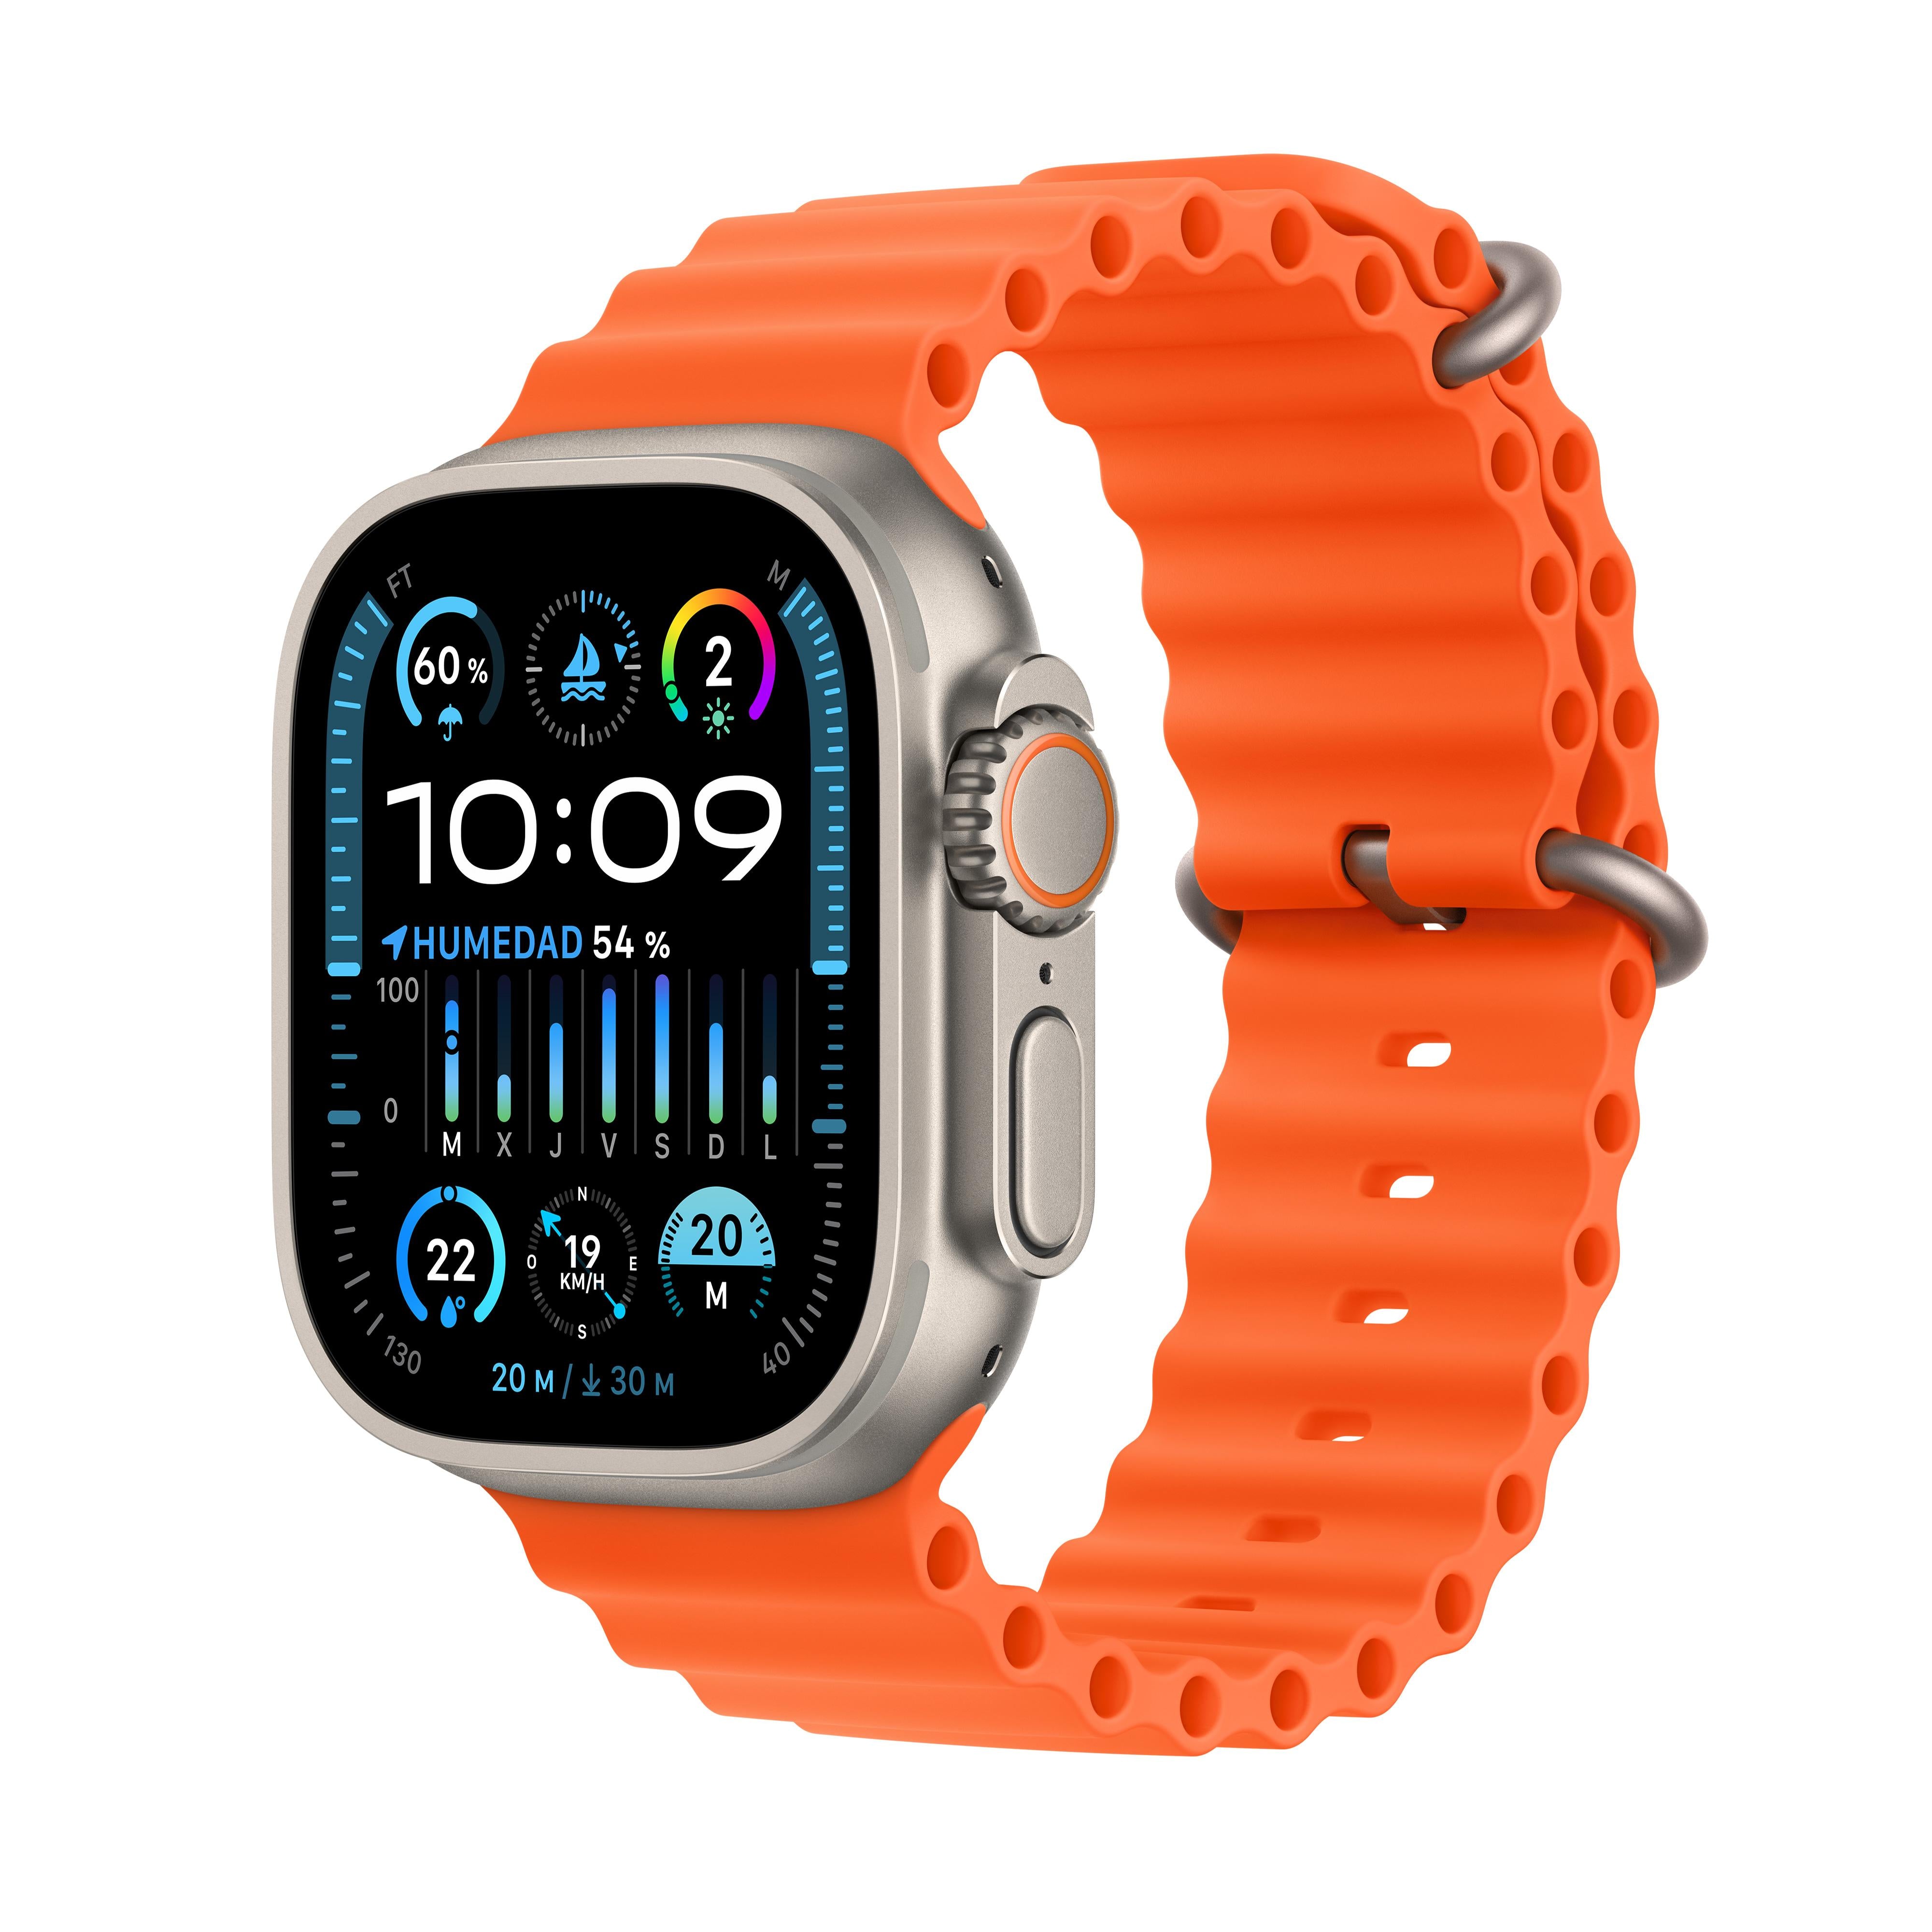 Usar el modo de bajo consumo en tu Apple Watch - Soporte técnico